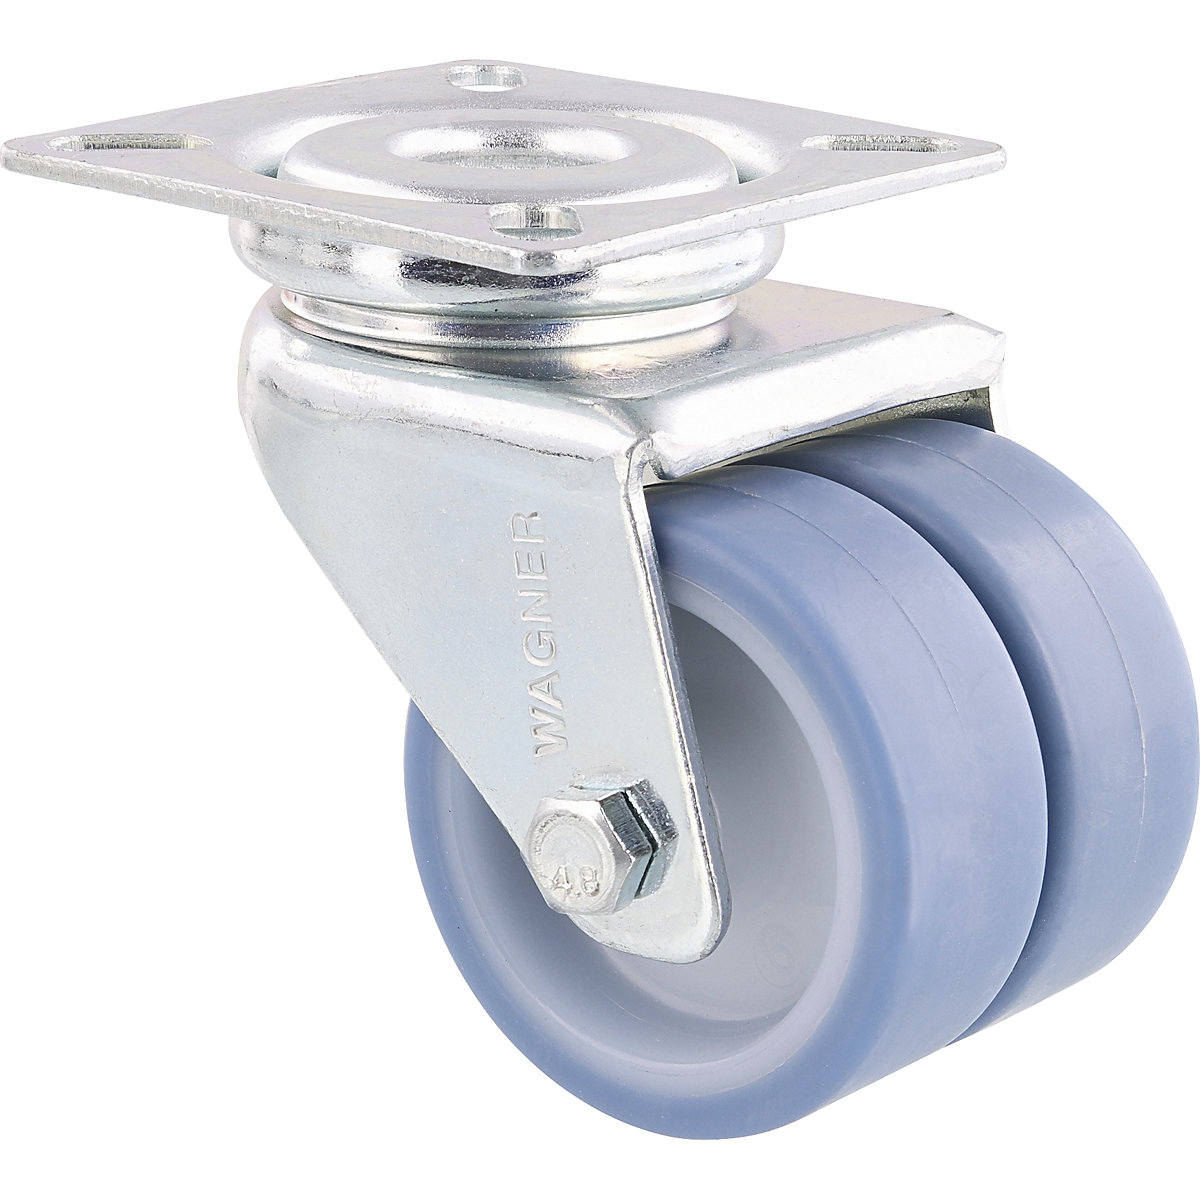 Rodas orientáveis duplas para aparelhos ECO – Wagner, Ø das rodas 50 mm, embalagem de 4 unid., roda orientável, TPR-4